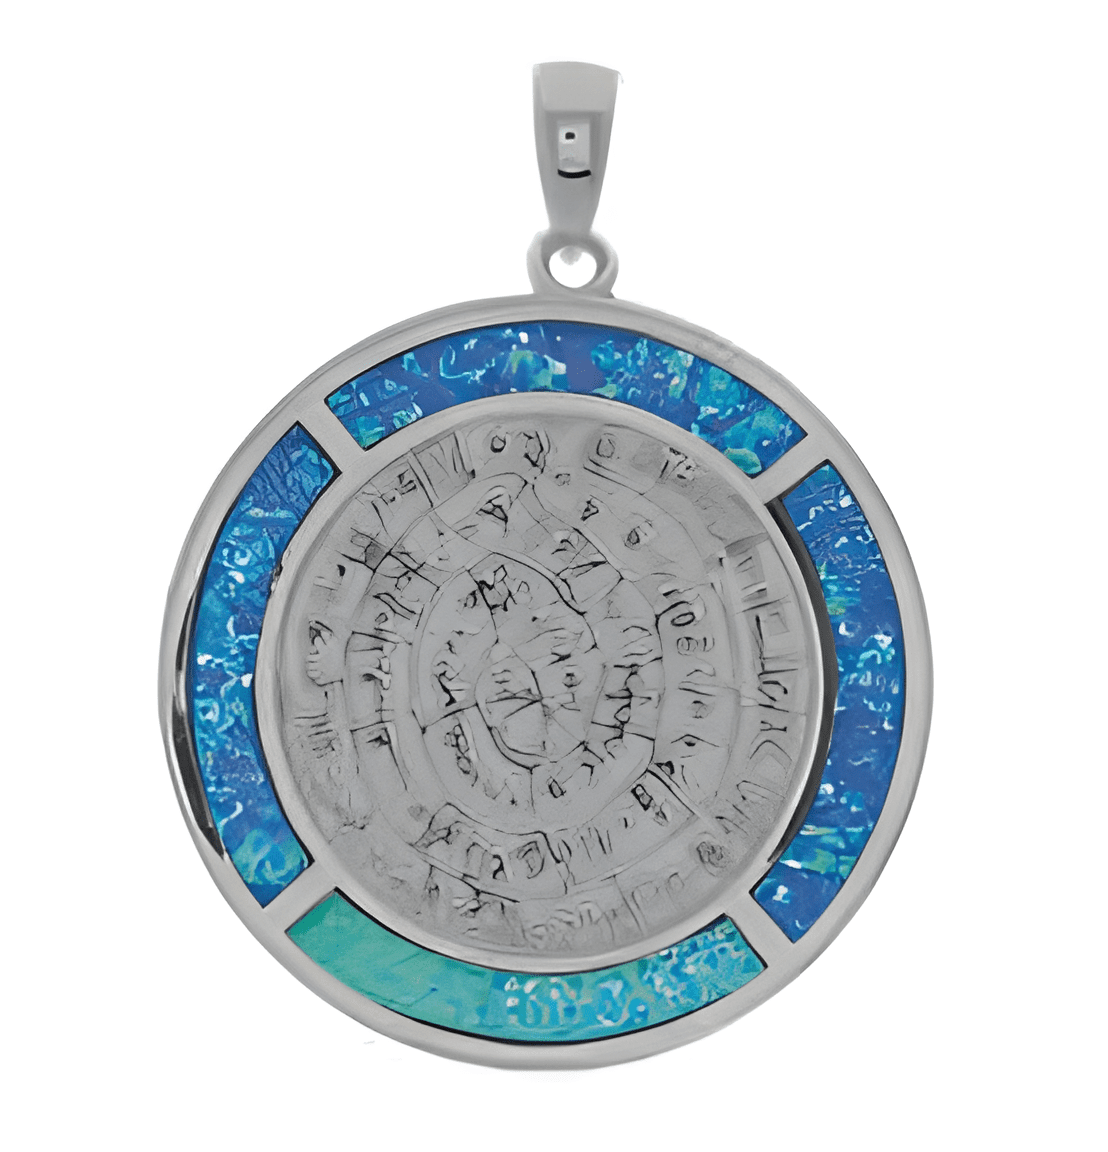 Сребърен медальон с опалови камъни и диск Фестос, XL